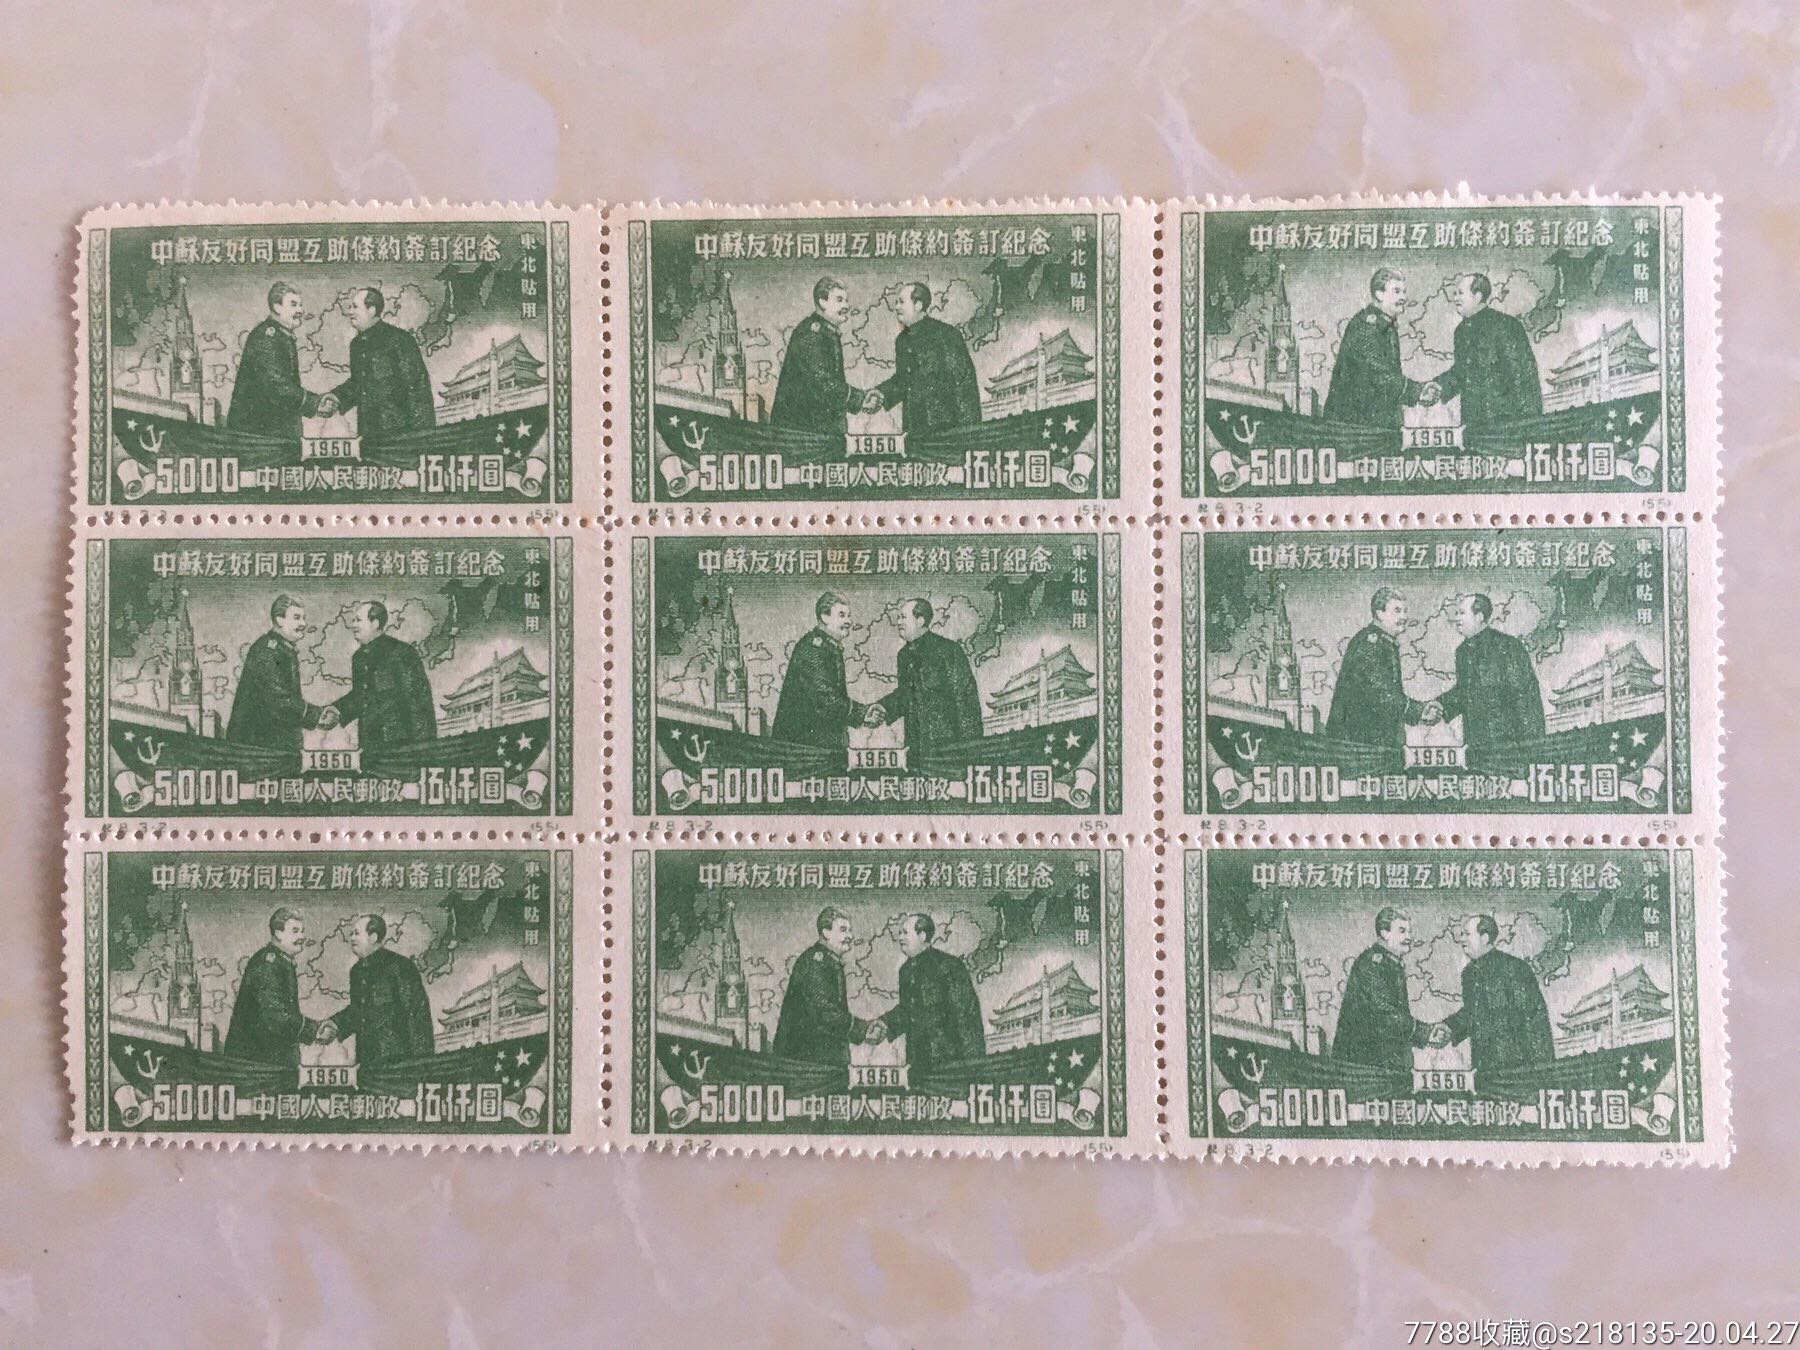 早期邮票--中苏友好同盟互助条约签订纪念邮票面值5000元,连张共9枚